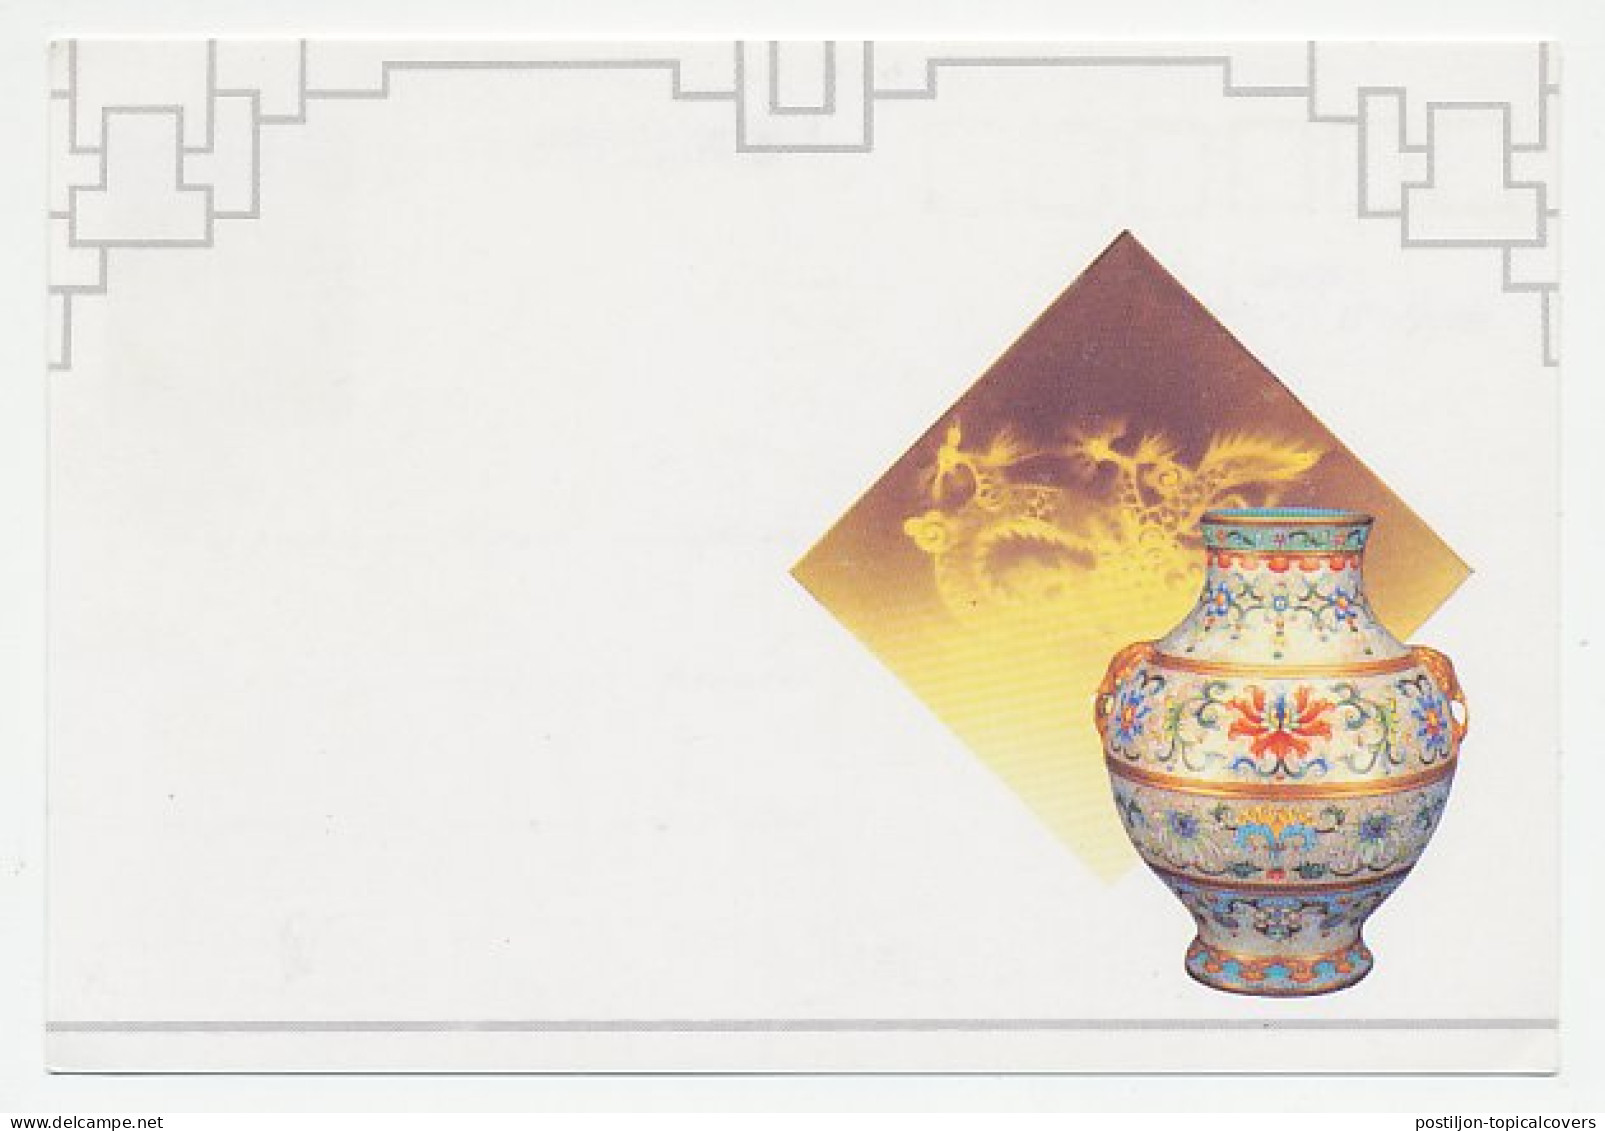 Postal Stationery China 1994 Vase - Porcelaine